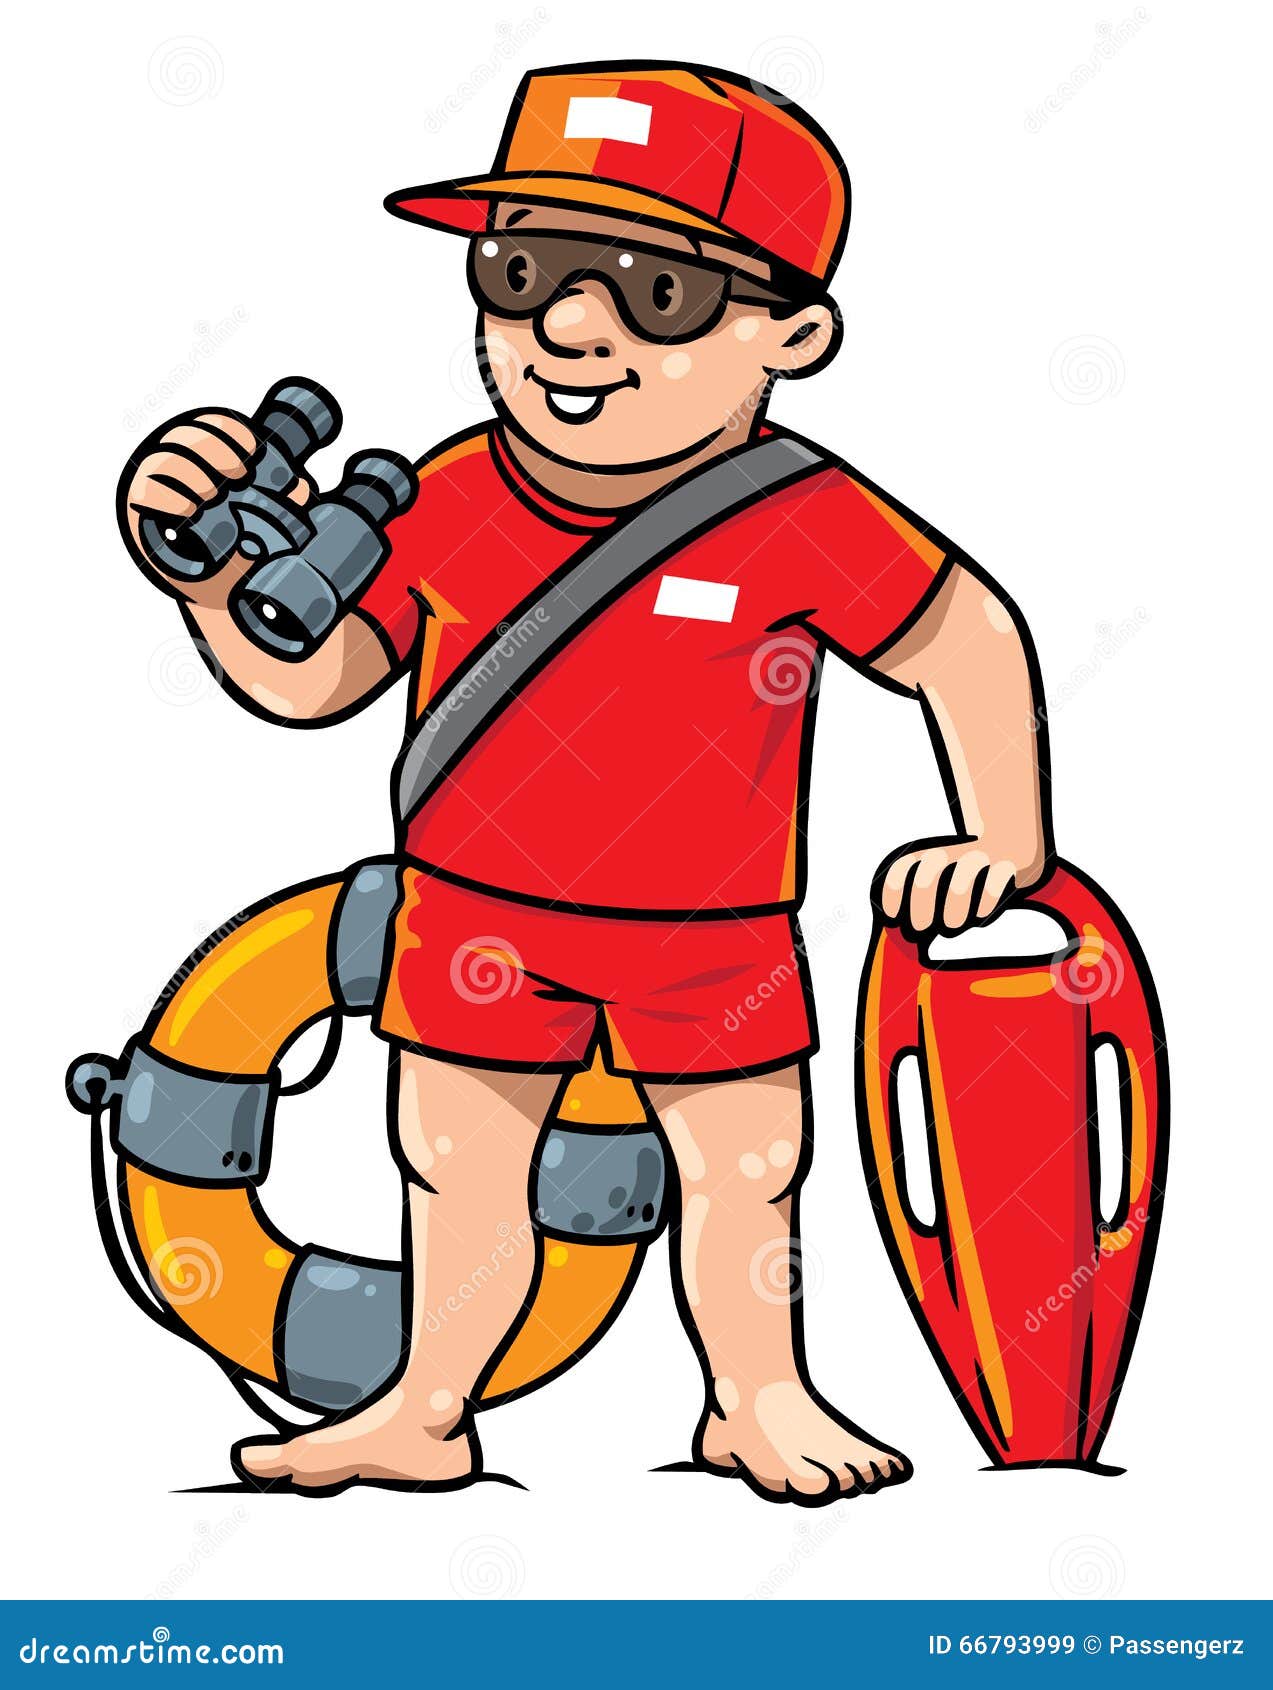 cartoon lifeguard clipart - photo #8